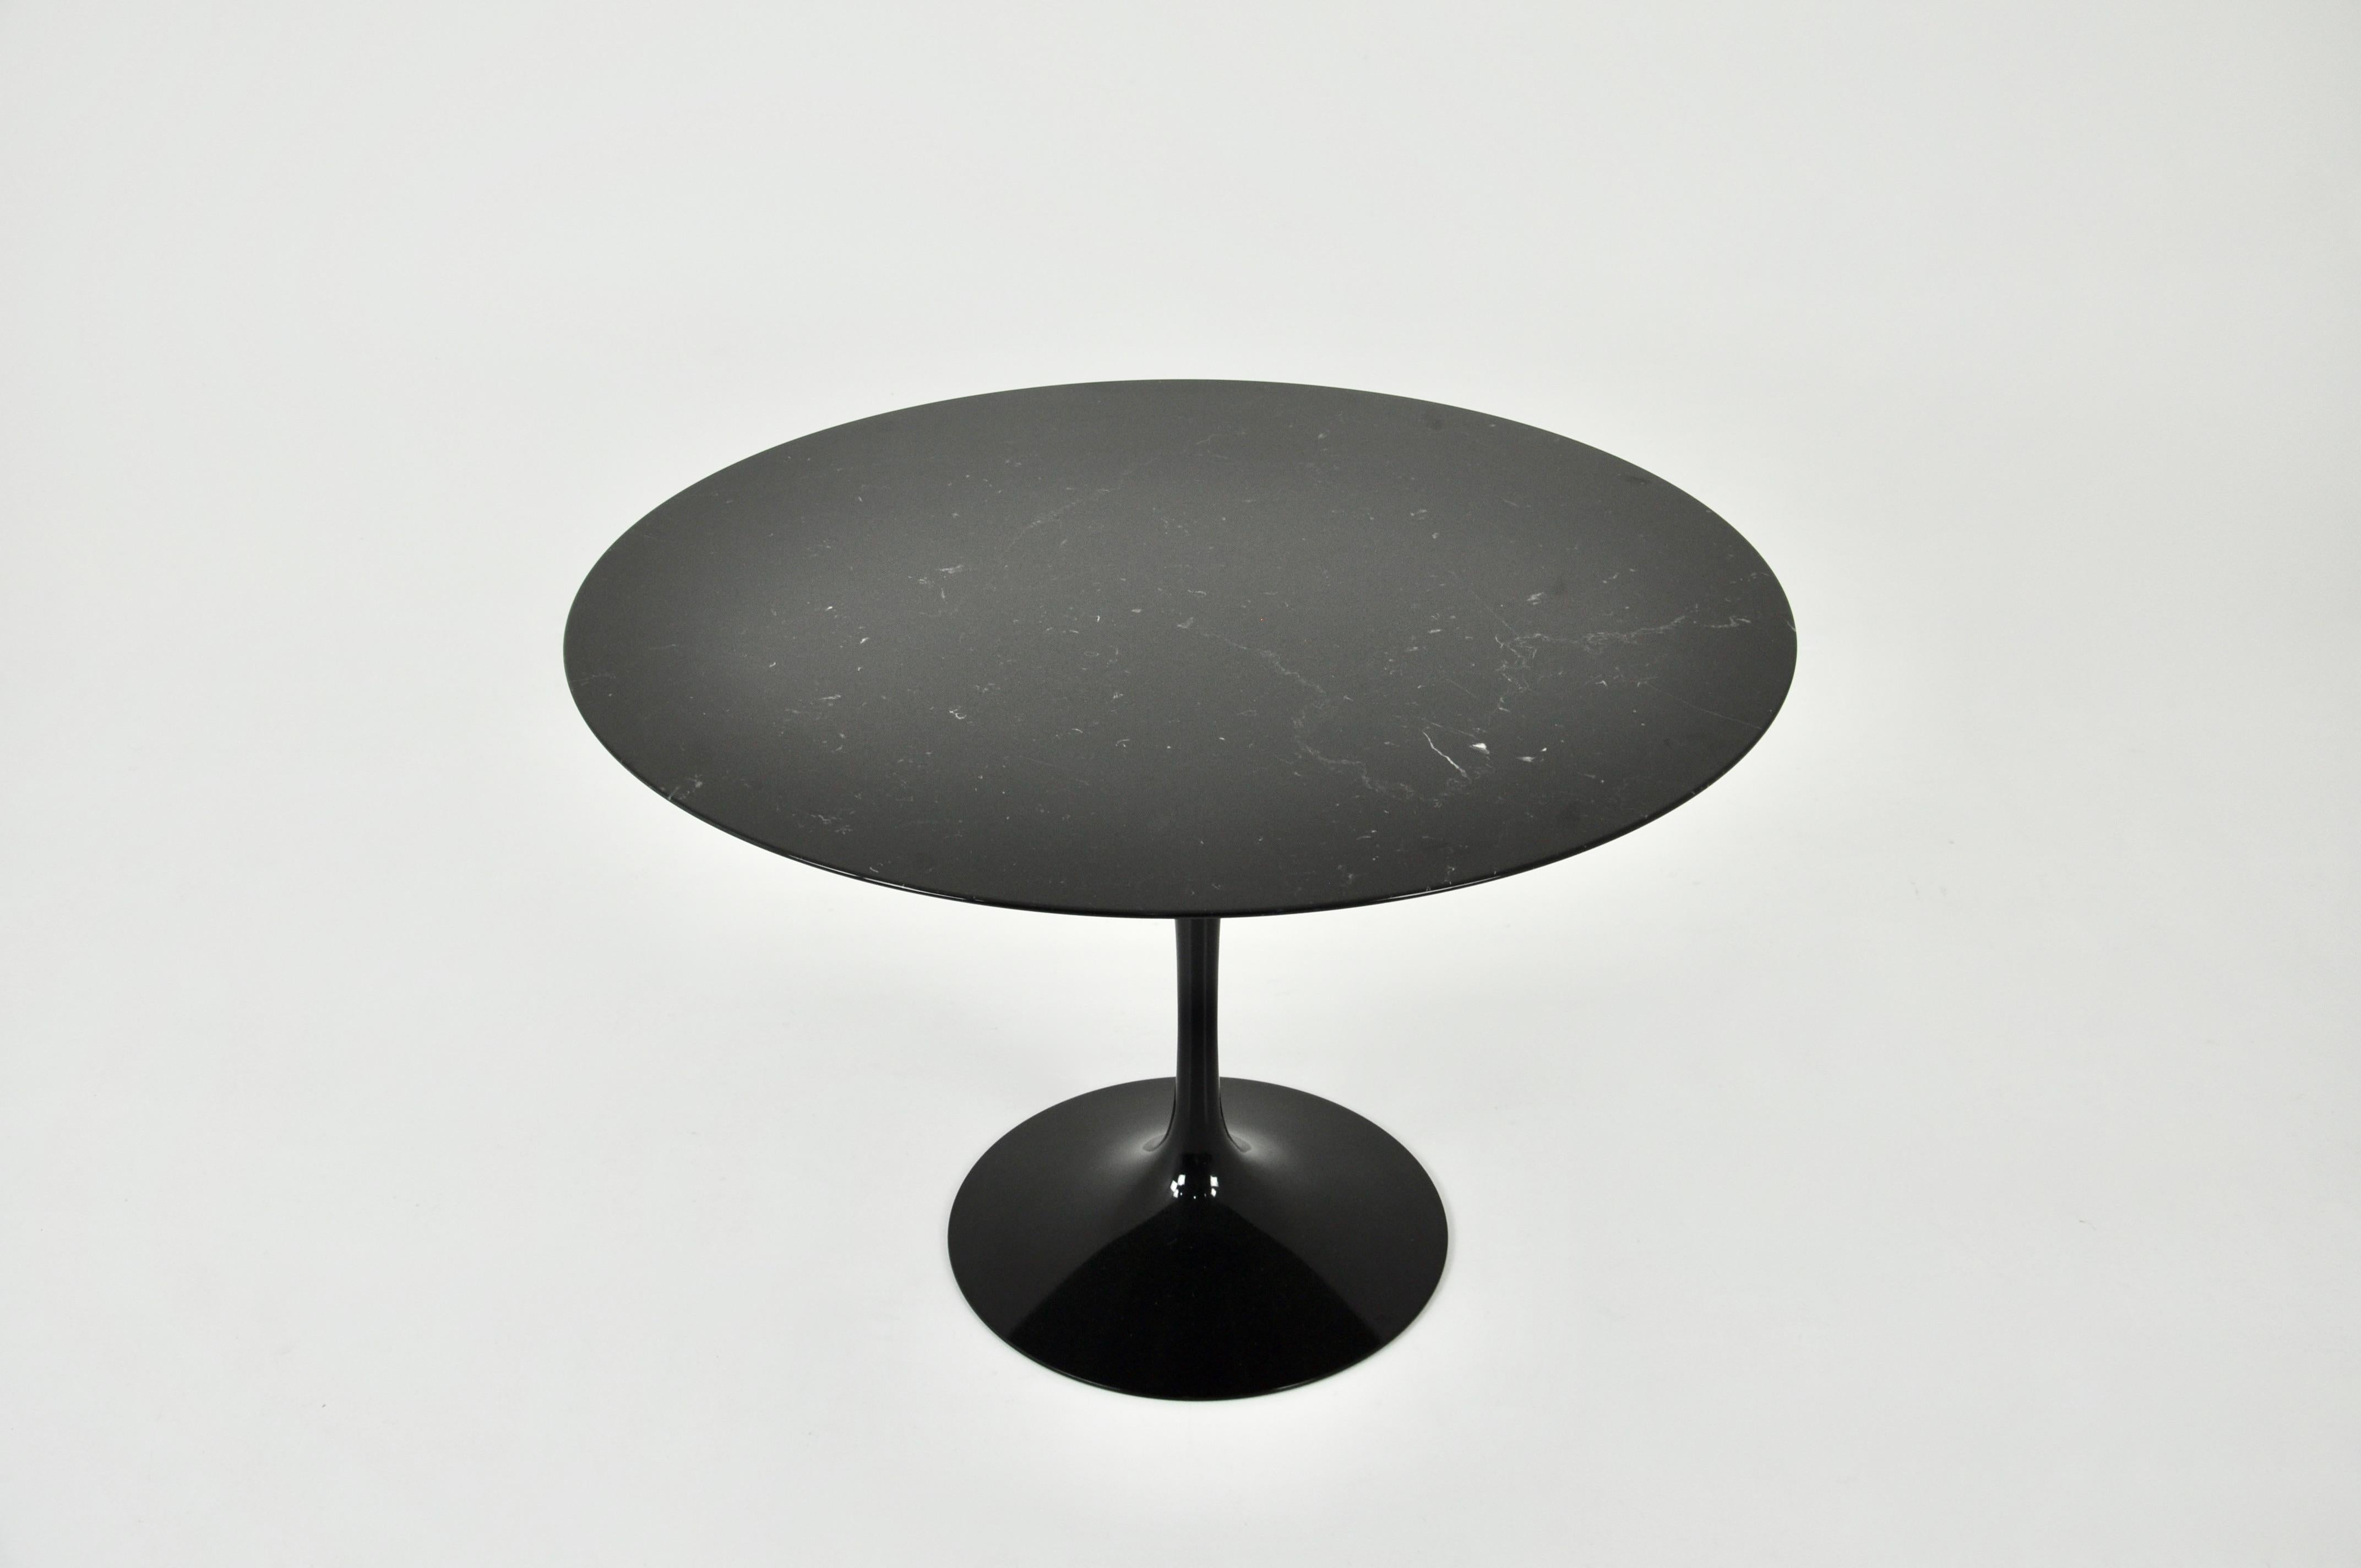 Schwarzer Marmortisch mit schwarzen Aluminiumbeinen. Unter dem Fuß und der Ablage gestempelt. Abnutzung durch die Zeit und das Alter des Tisches.